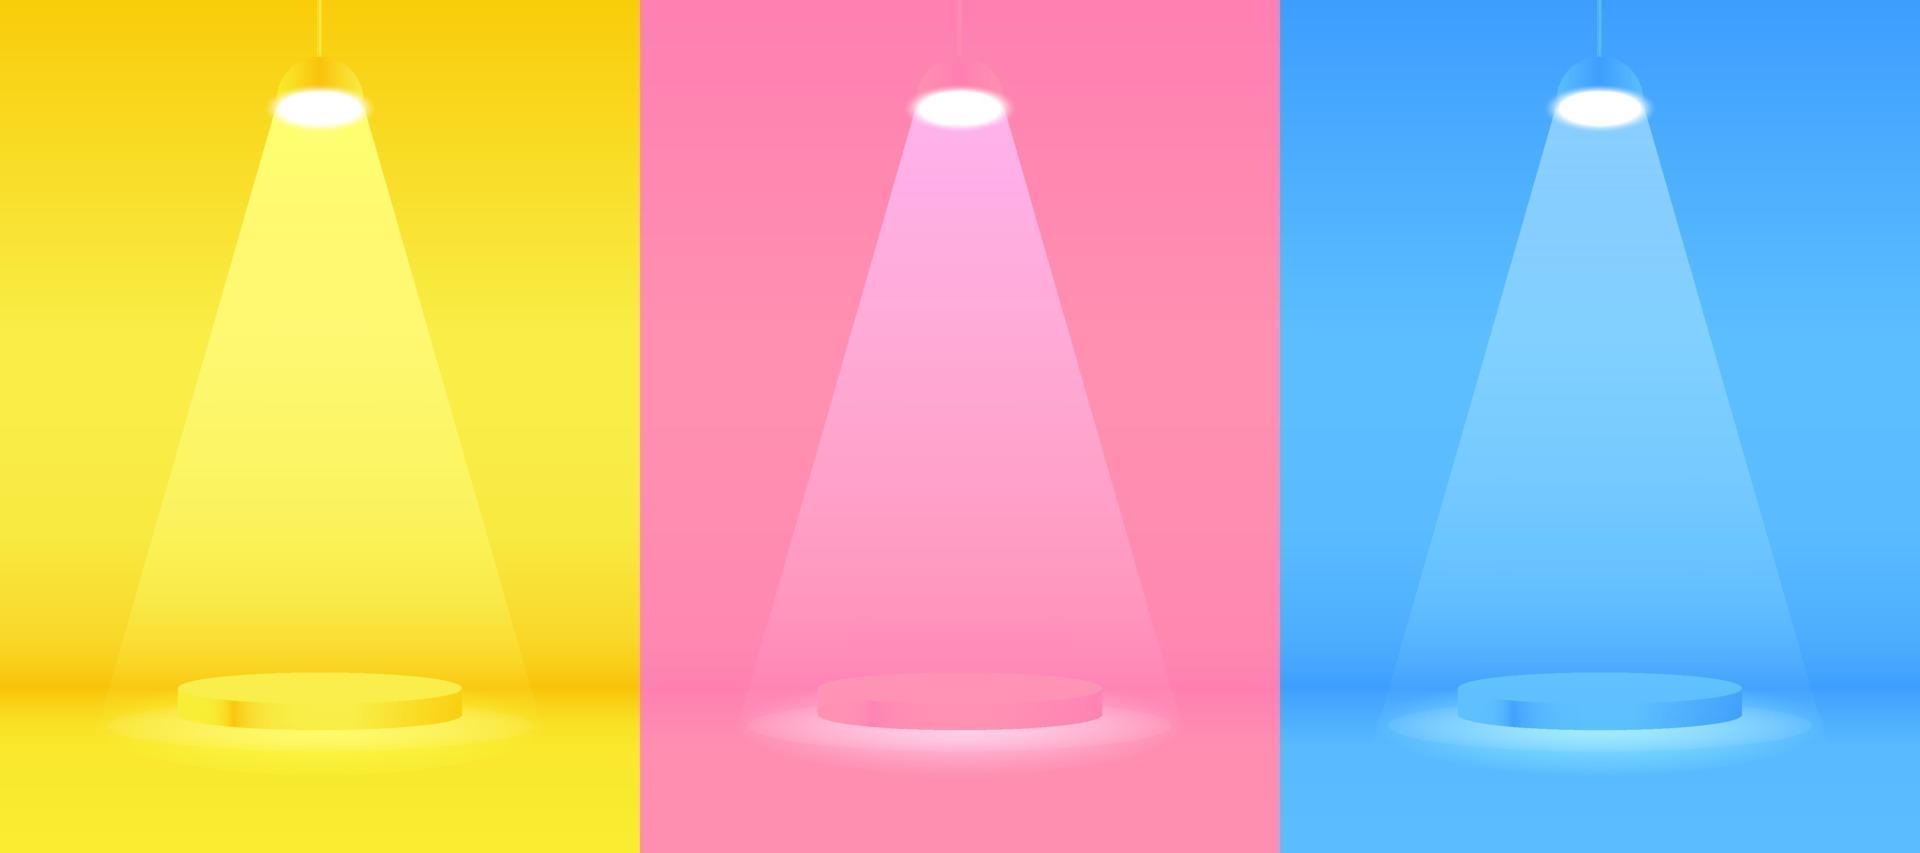 ensemble de podium de cylindre flottant 3d réaliste jaune, bleu foncé, rouge avec lampes au néon suspendues. vitrine de scène, affichage de produits. formes géométriques de rendu vectoriel. scène minimale abstraite. vecteur